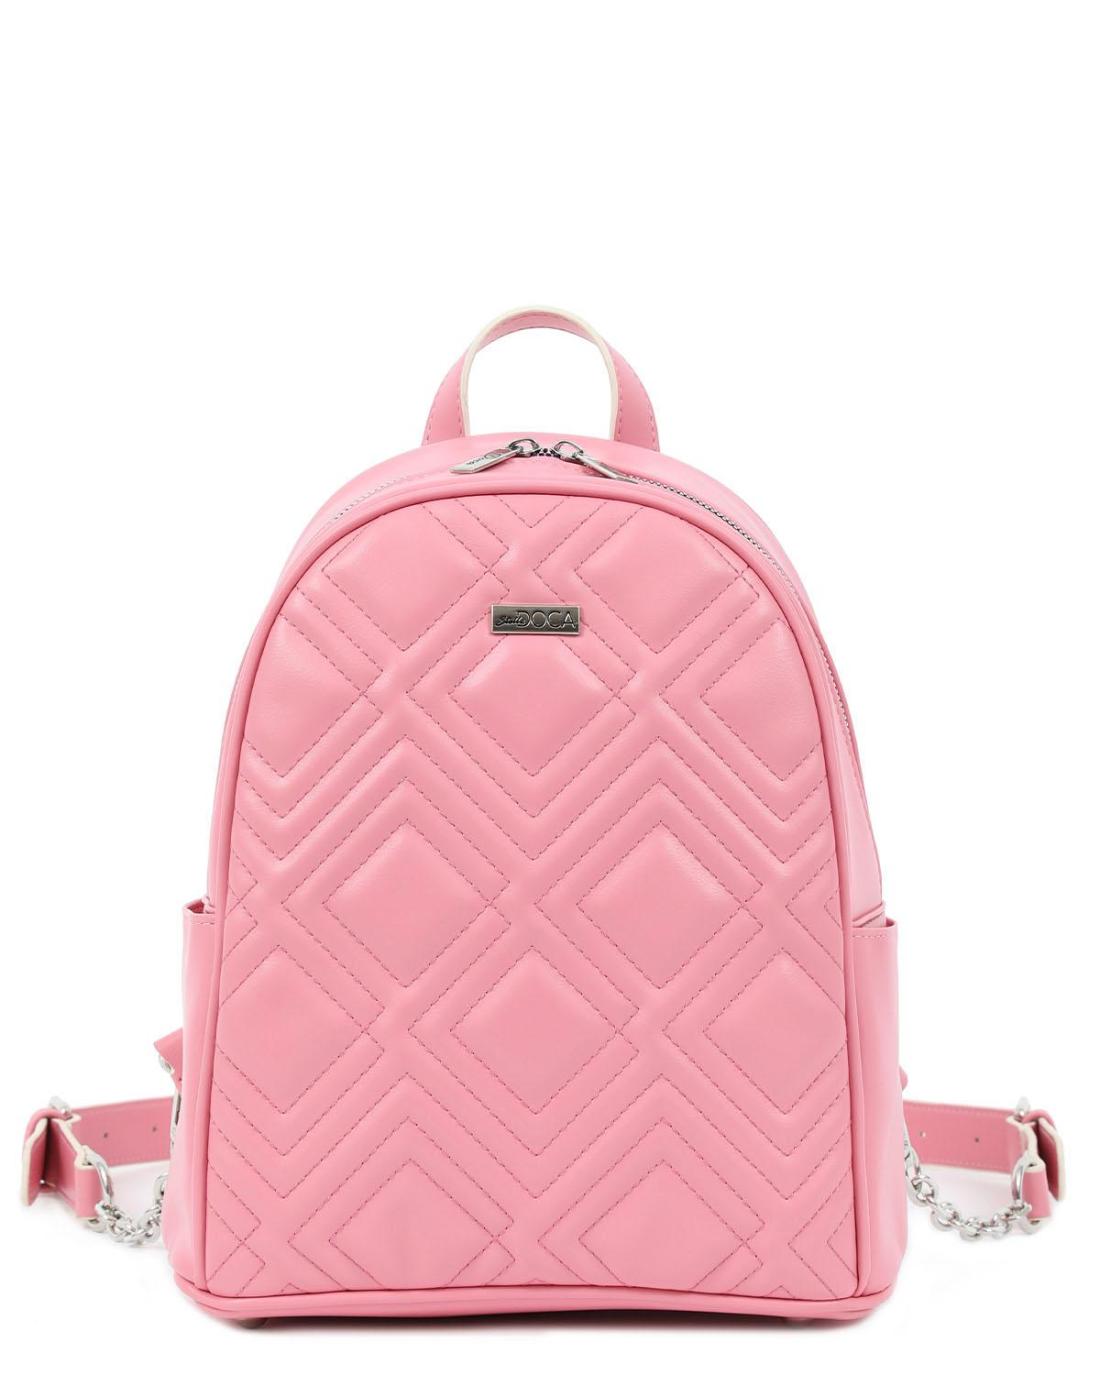 20539 | Γυναικεία τσάντα πλάτης ροζ